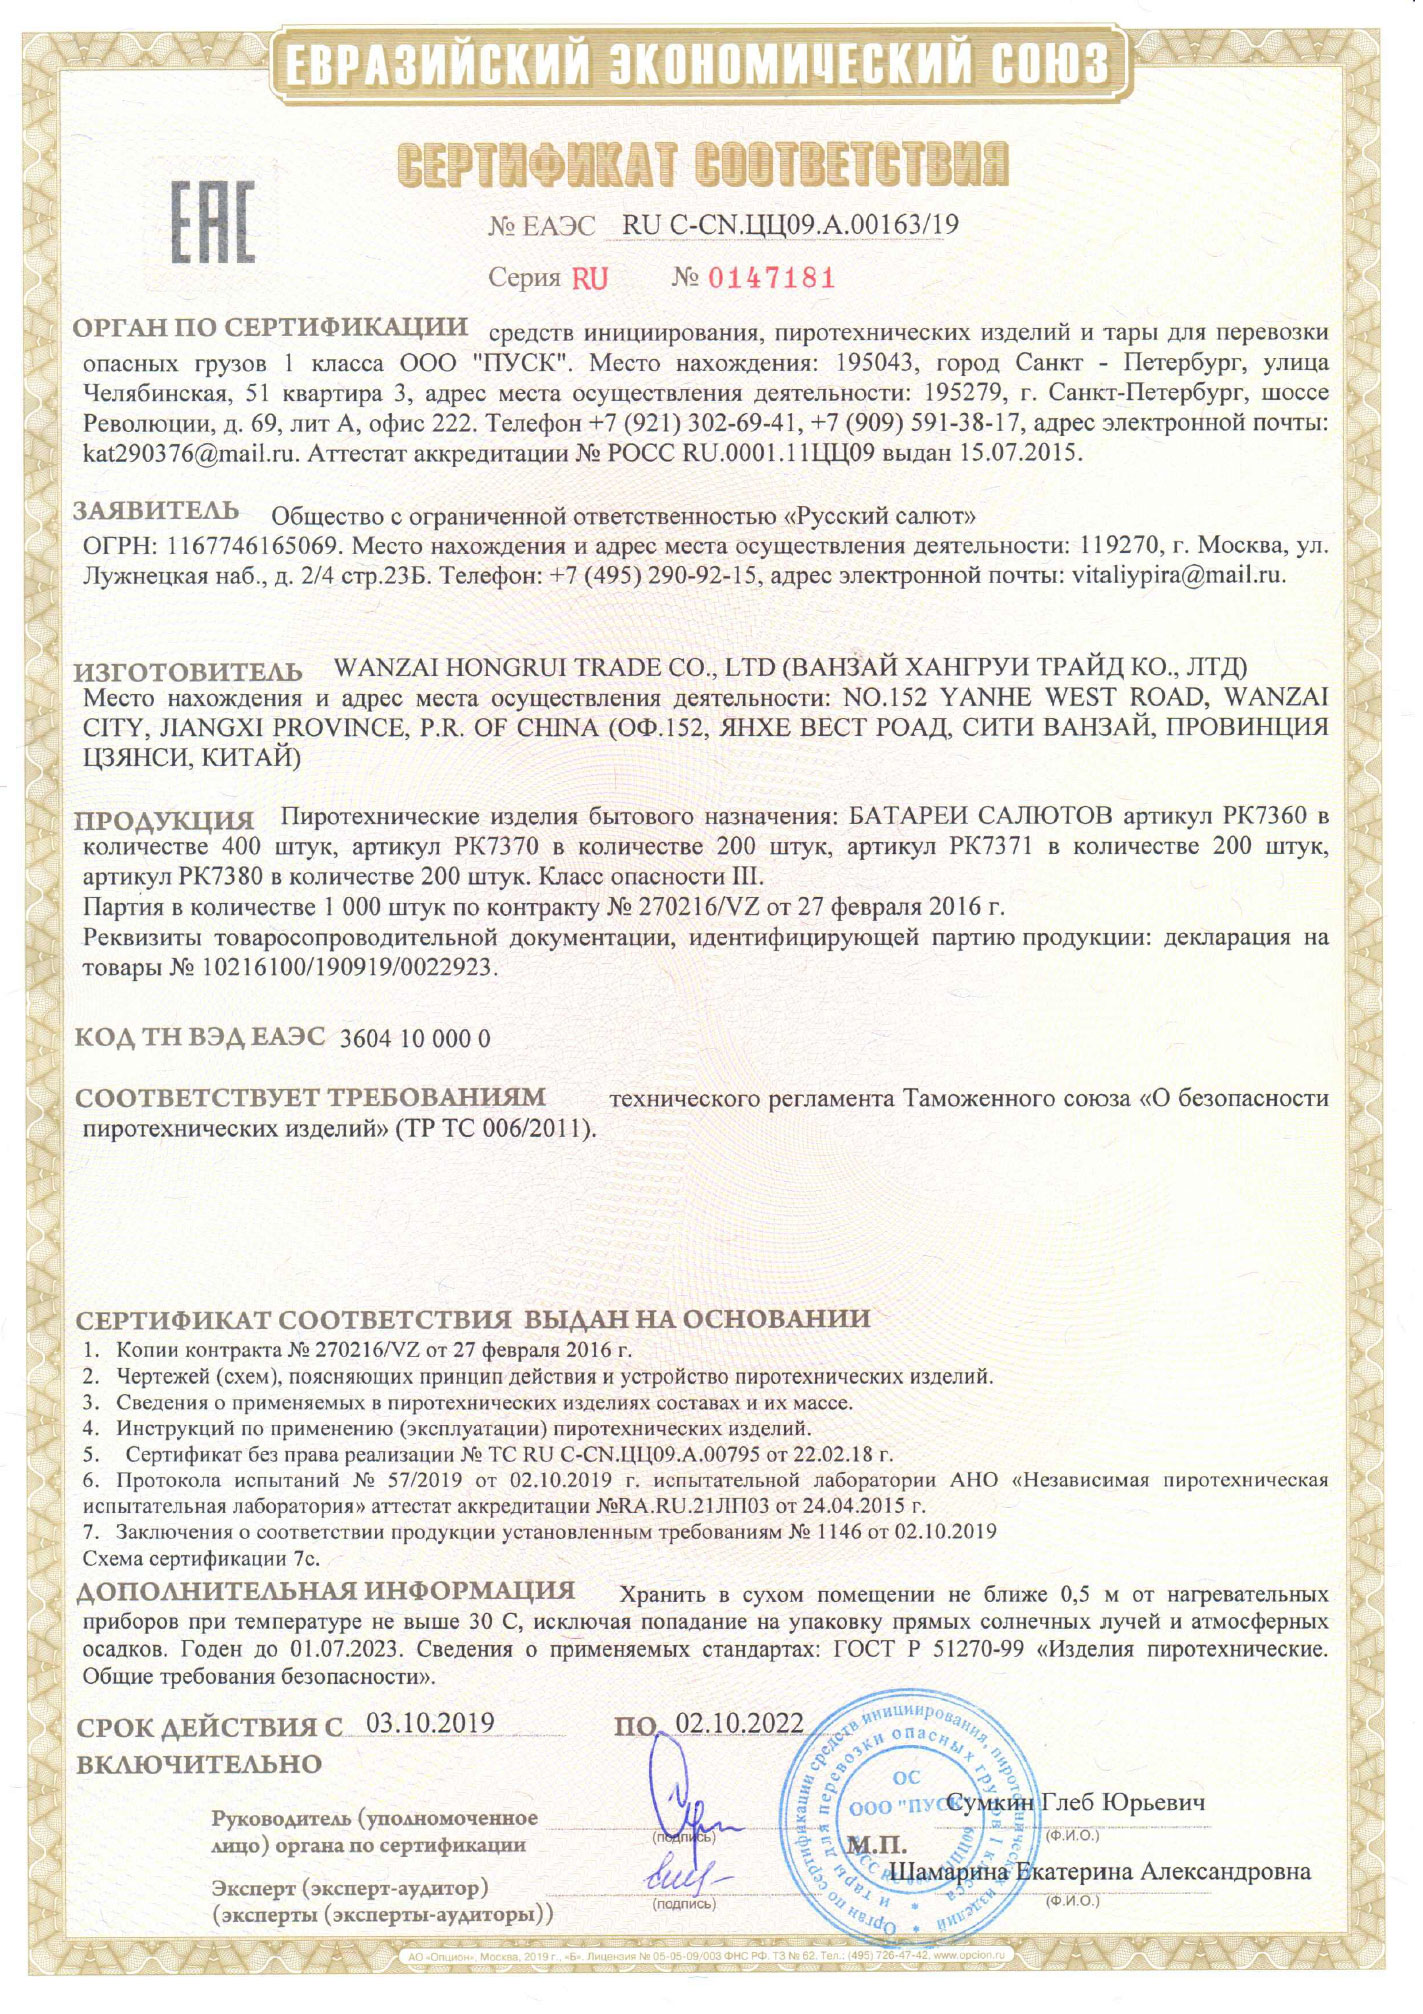 Сертификат Тирамису 1,0" х 72 (арт. РК7371)